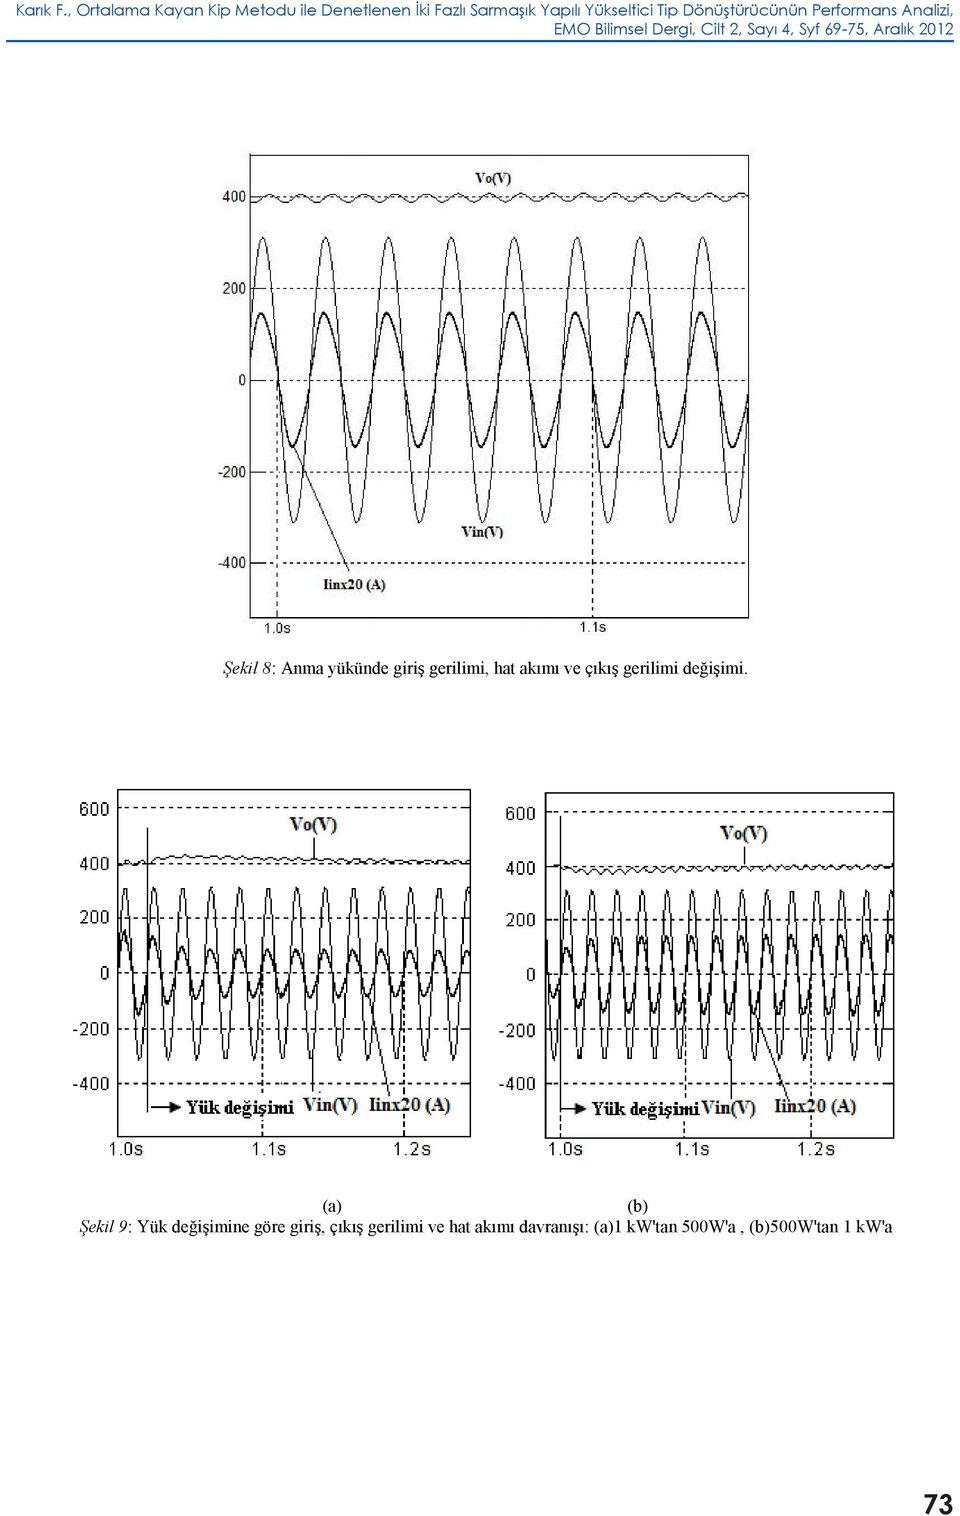 Dönüştürücünün Performans Analizi, EMO Bilimsel Dergi, Cilt 2, Sayı 4, Syf 69-75, Aralık 2012